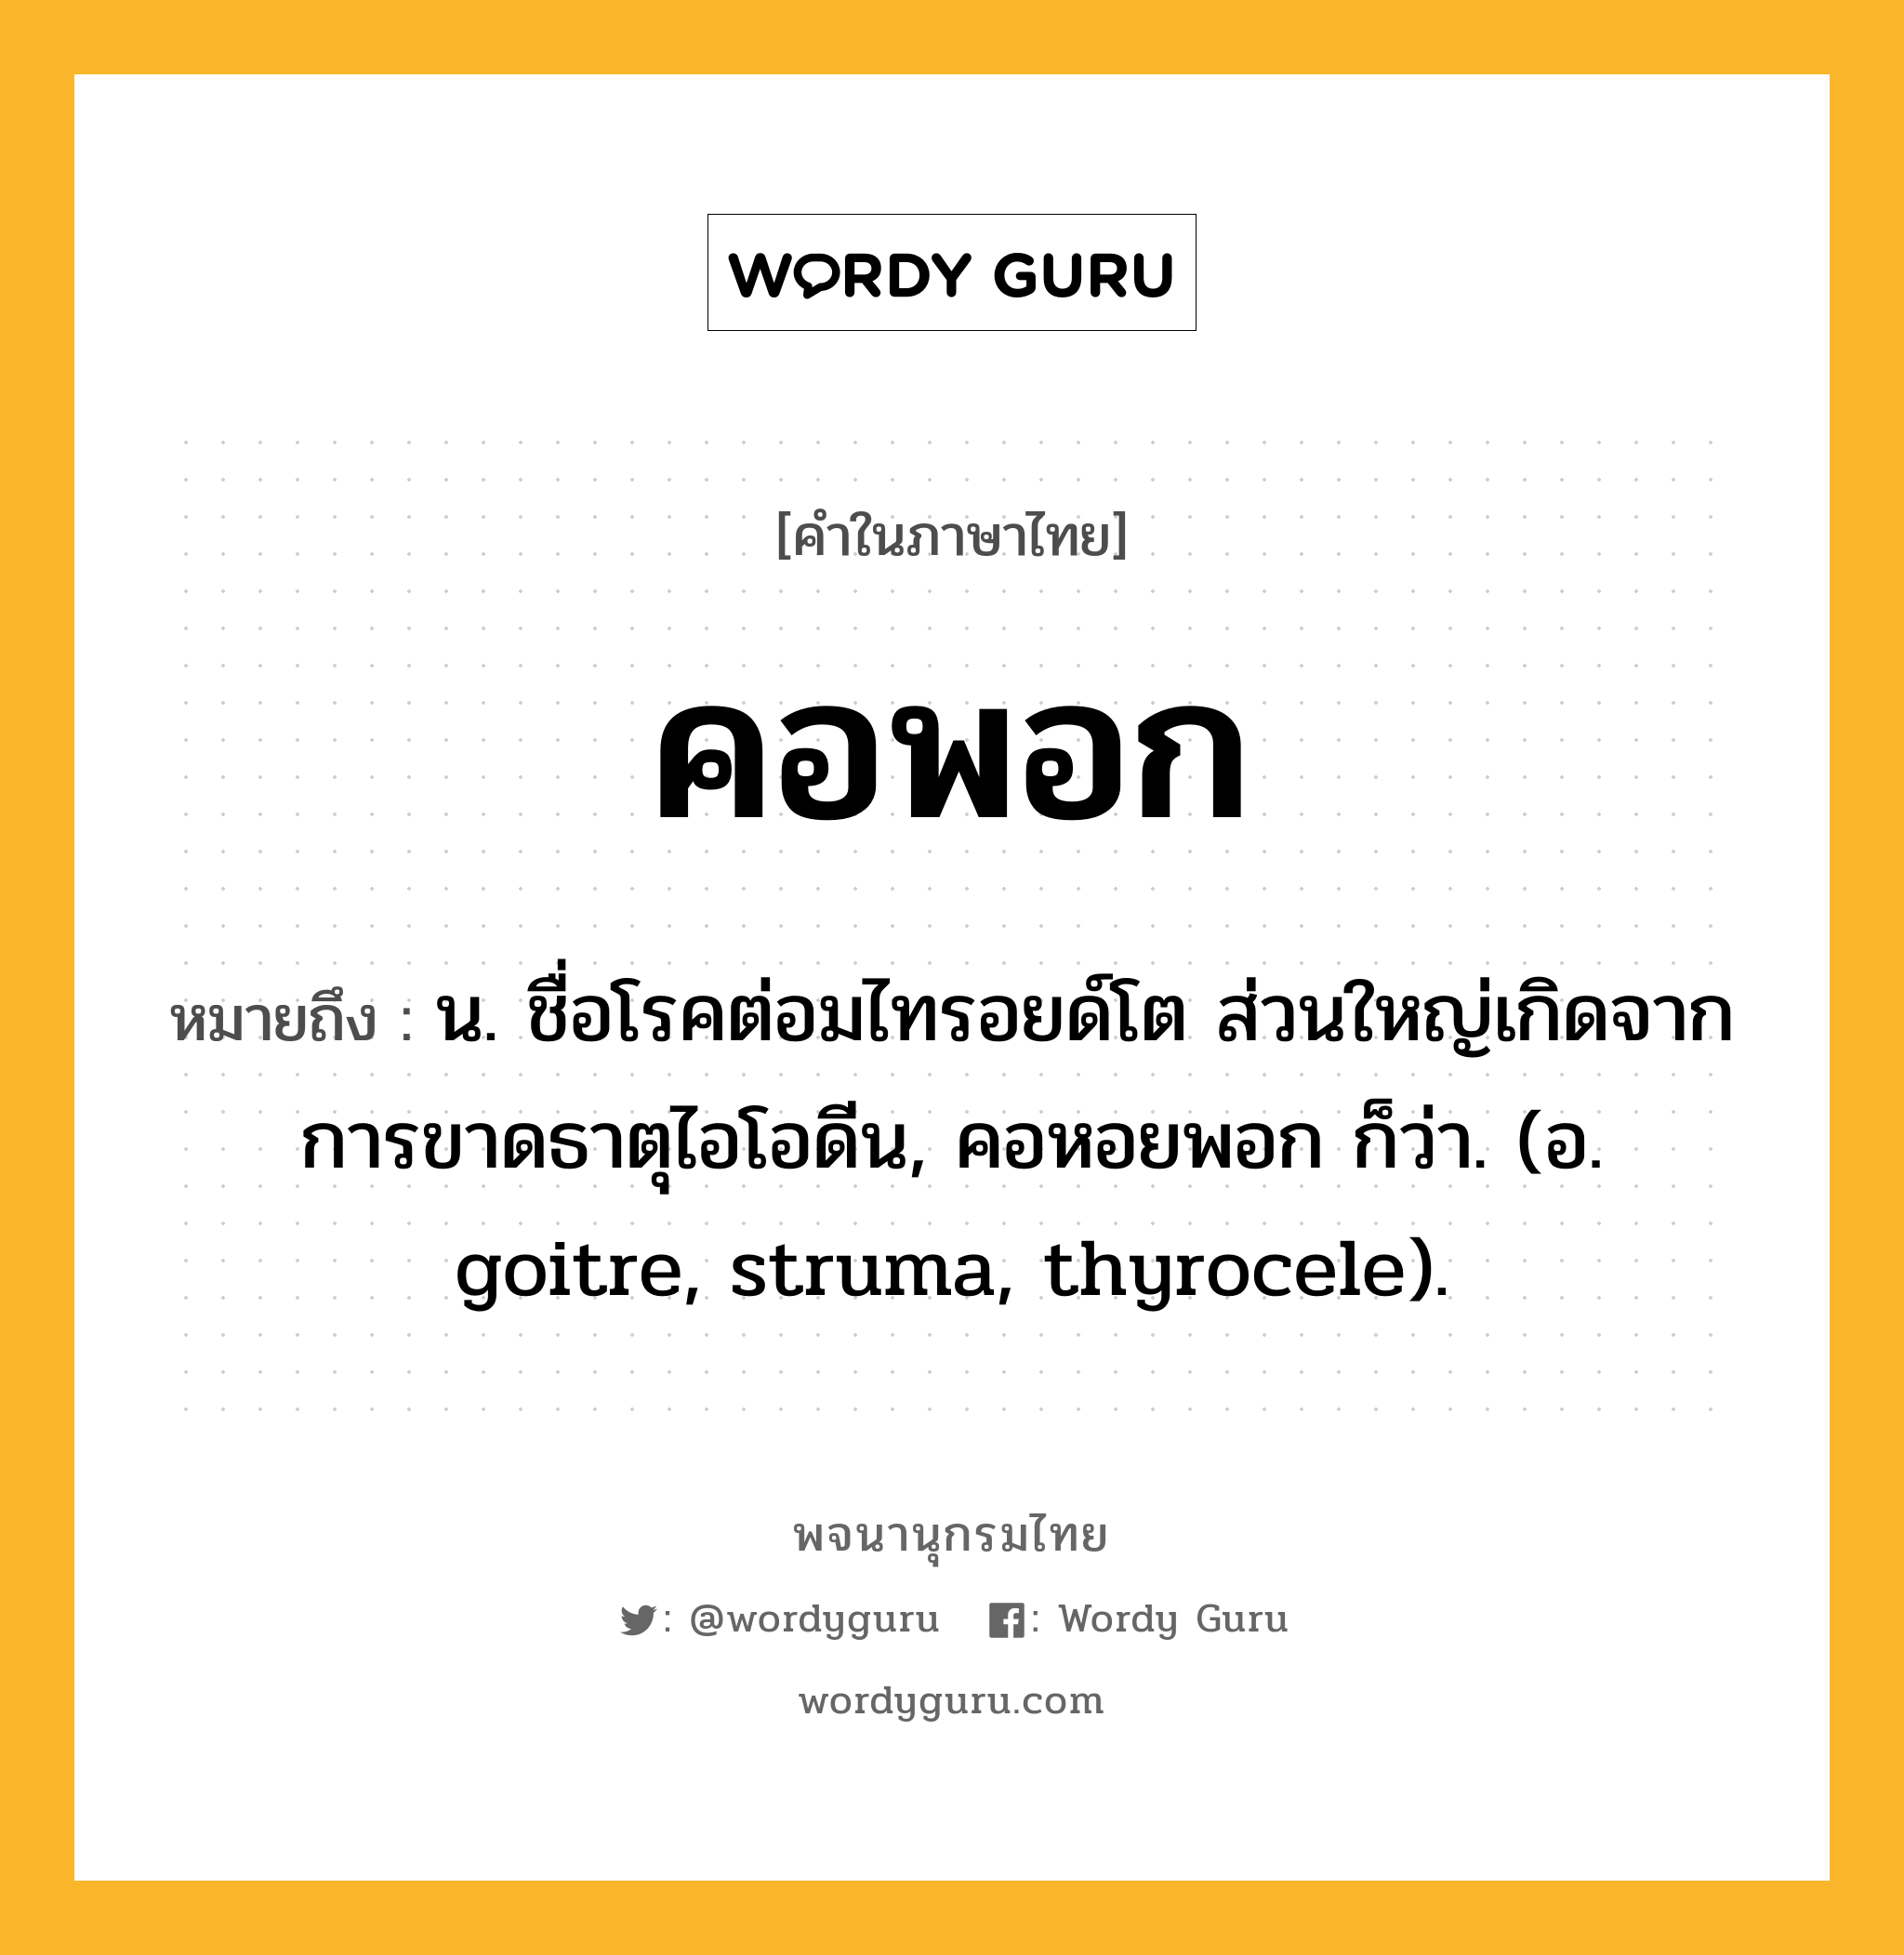 คอพอก ความหมาย หมายถึงอะไร?, คำในภาษาไทย คอพอก หมายถึง น. ชื่อโรคต่อมไทรอยด์โต ส่วนใหญ่เกิดจากการขาดธาตุไอโอดีน, คอหอยพอก ก็ว่า. (อ. goitre, struma, thyrocele).